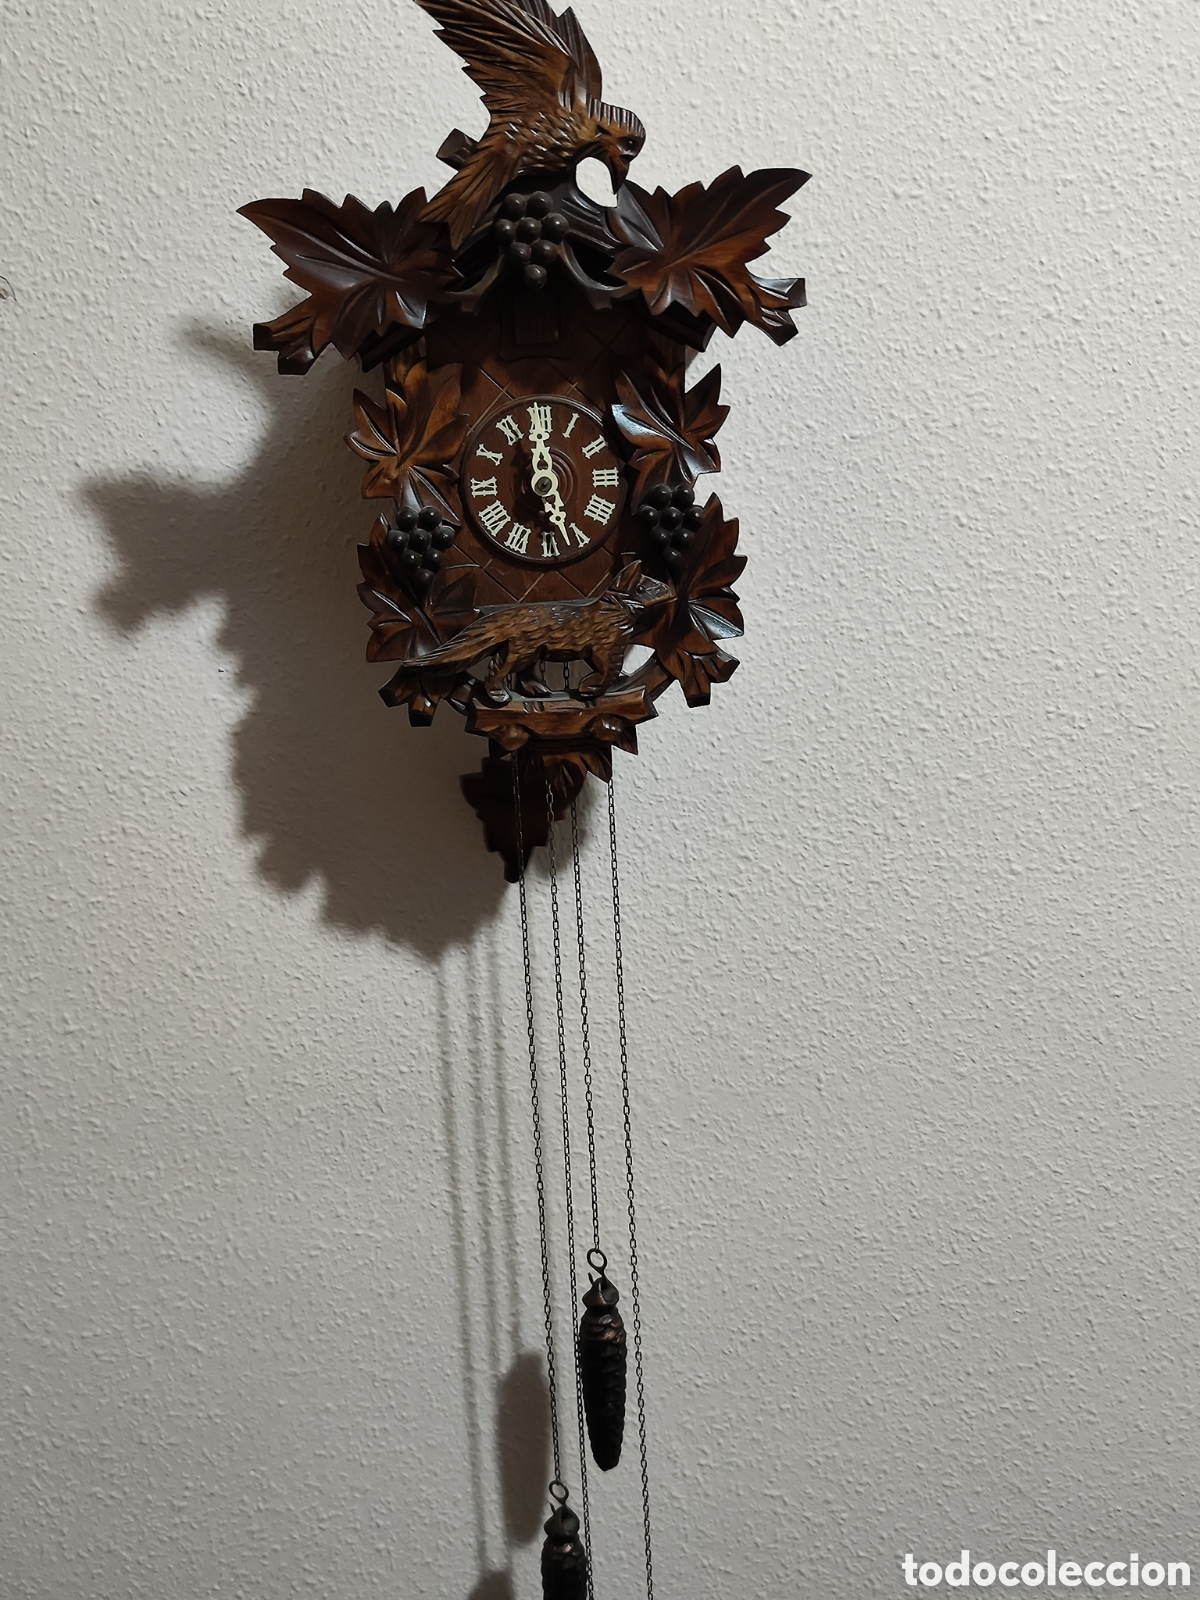 antiguo reloj de cucut suizo de madera tallada - Compra venta en  todocoleccion